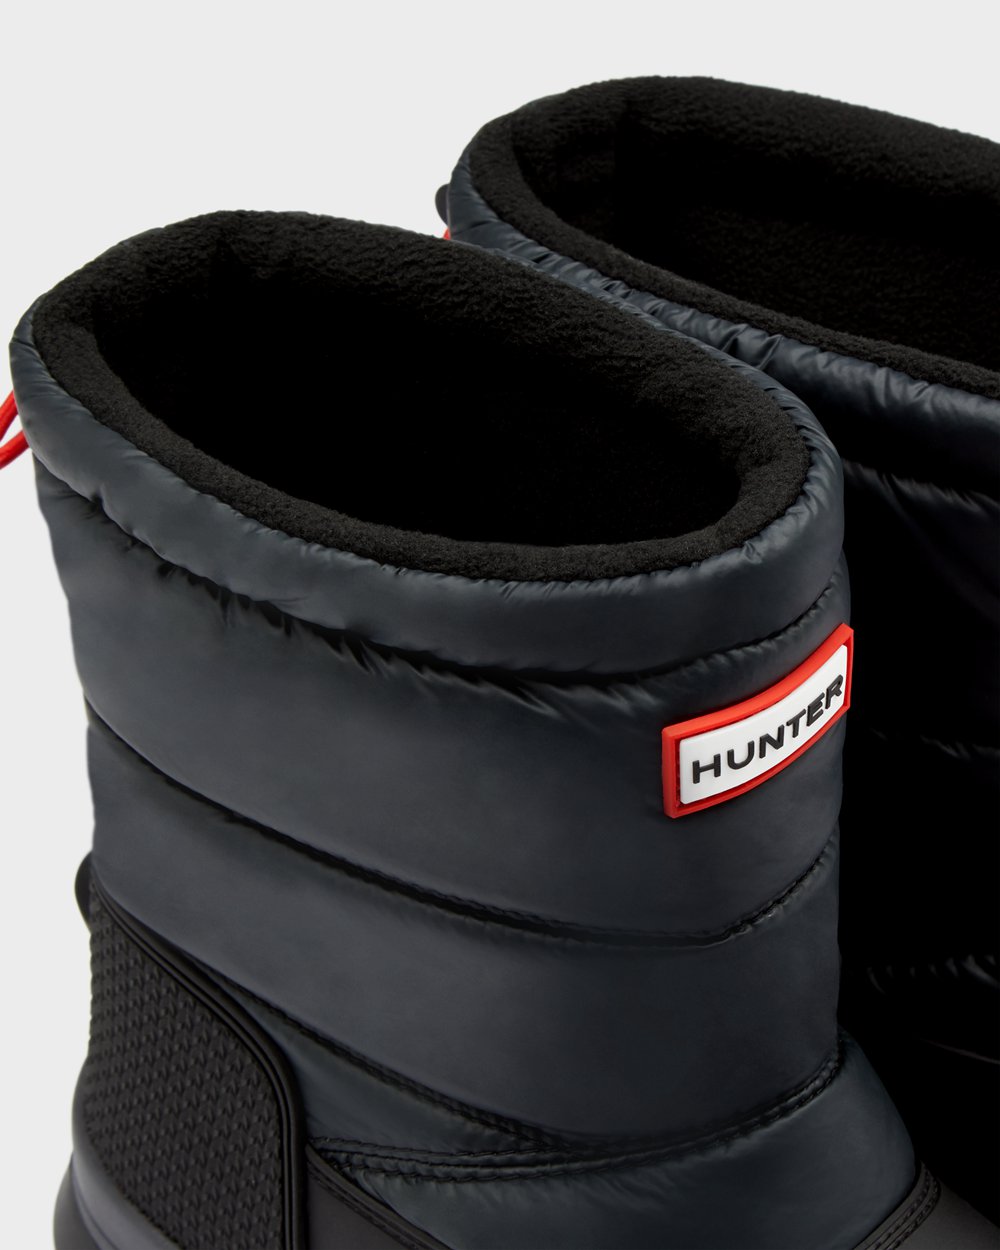 Womens Snow Boots - Hunter Original Insulated Short (64UNPZIER) - Black